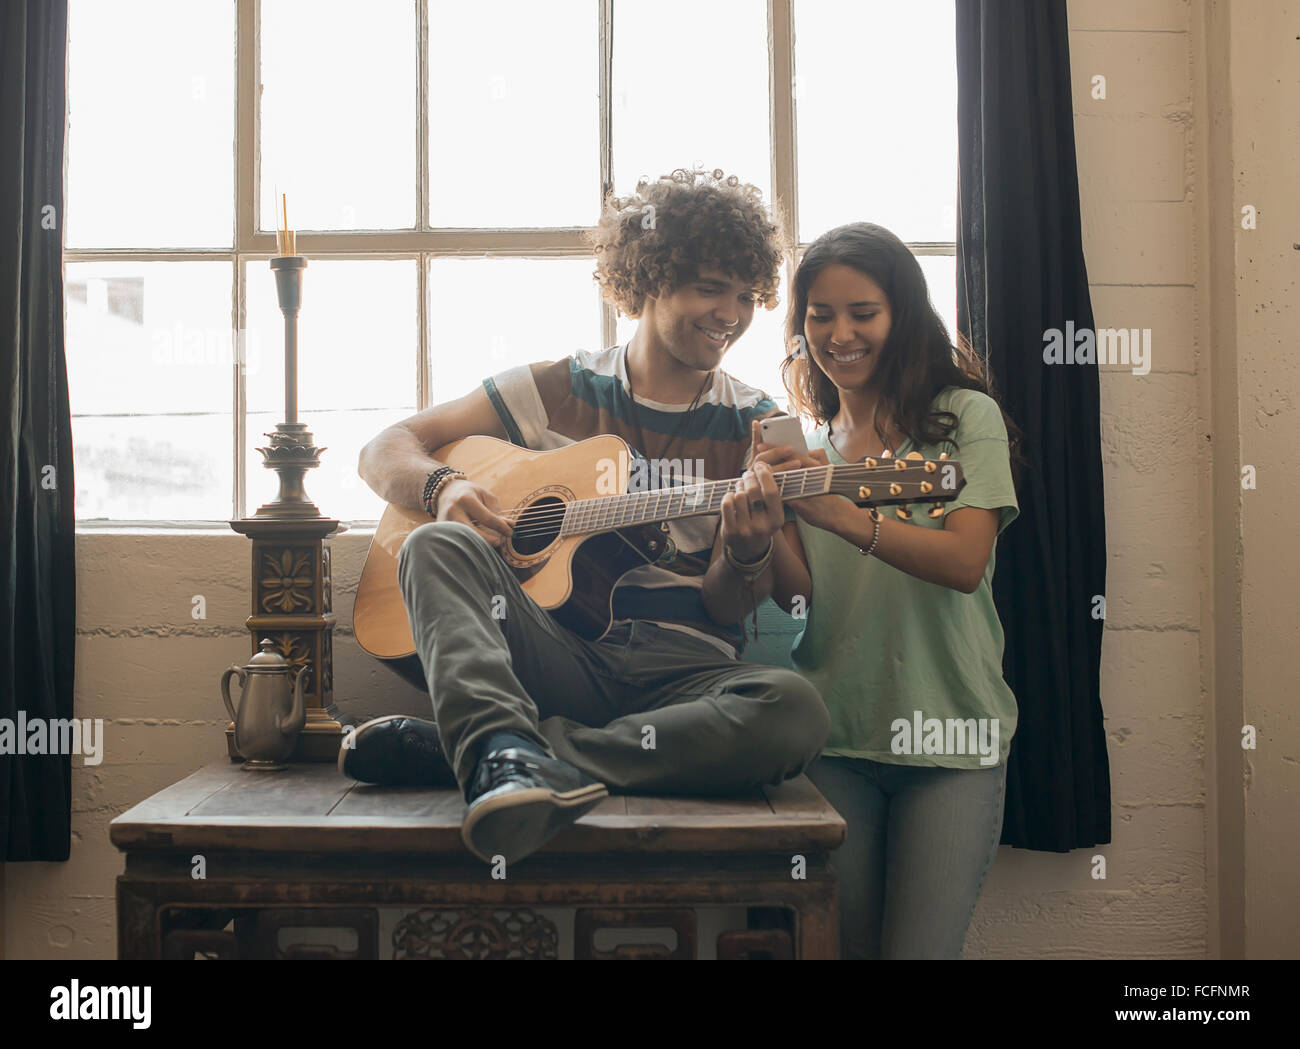 Loft-lebendigen. Ein junger Mann spielt Gitarre und eine Frau neben ihm fotografieren mit einem smart-Phone. Stockfoto